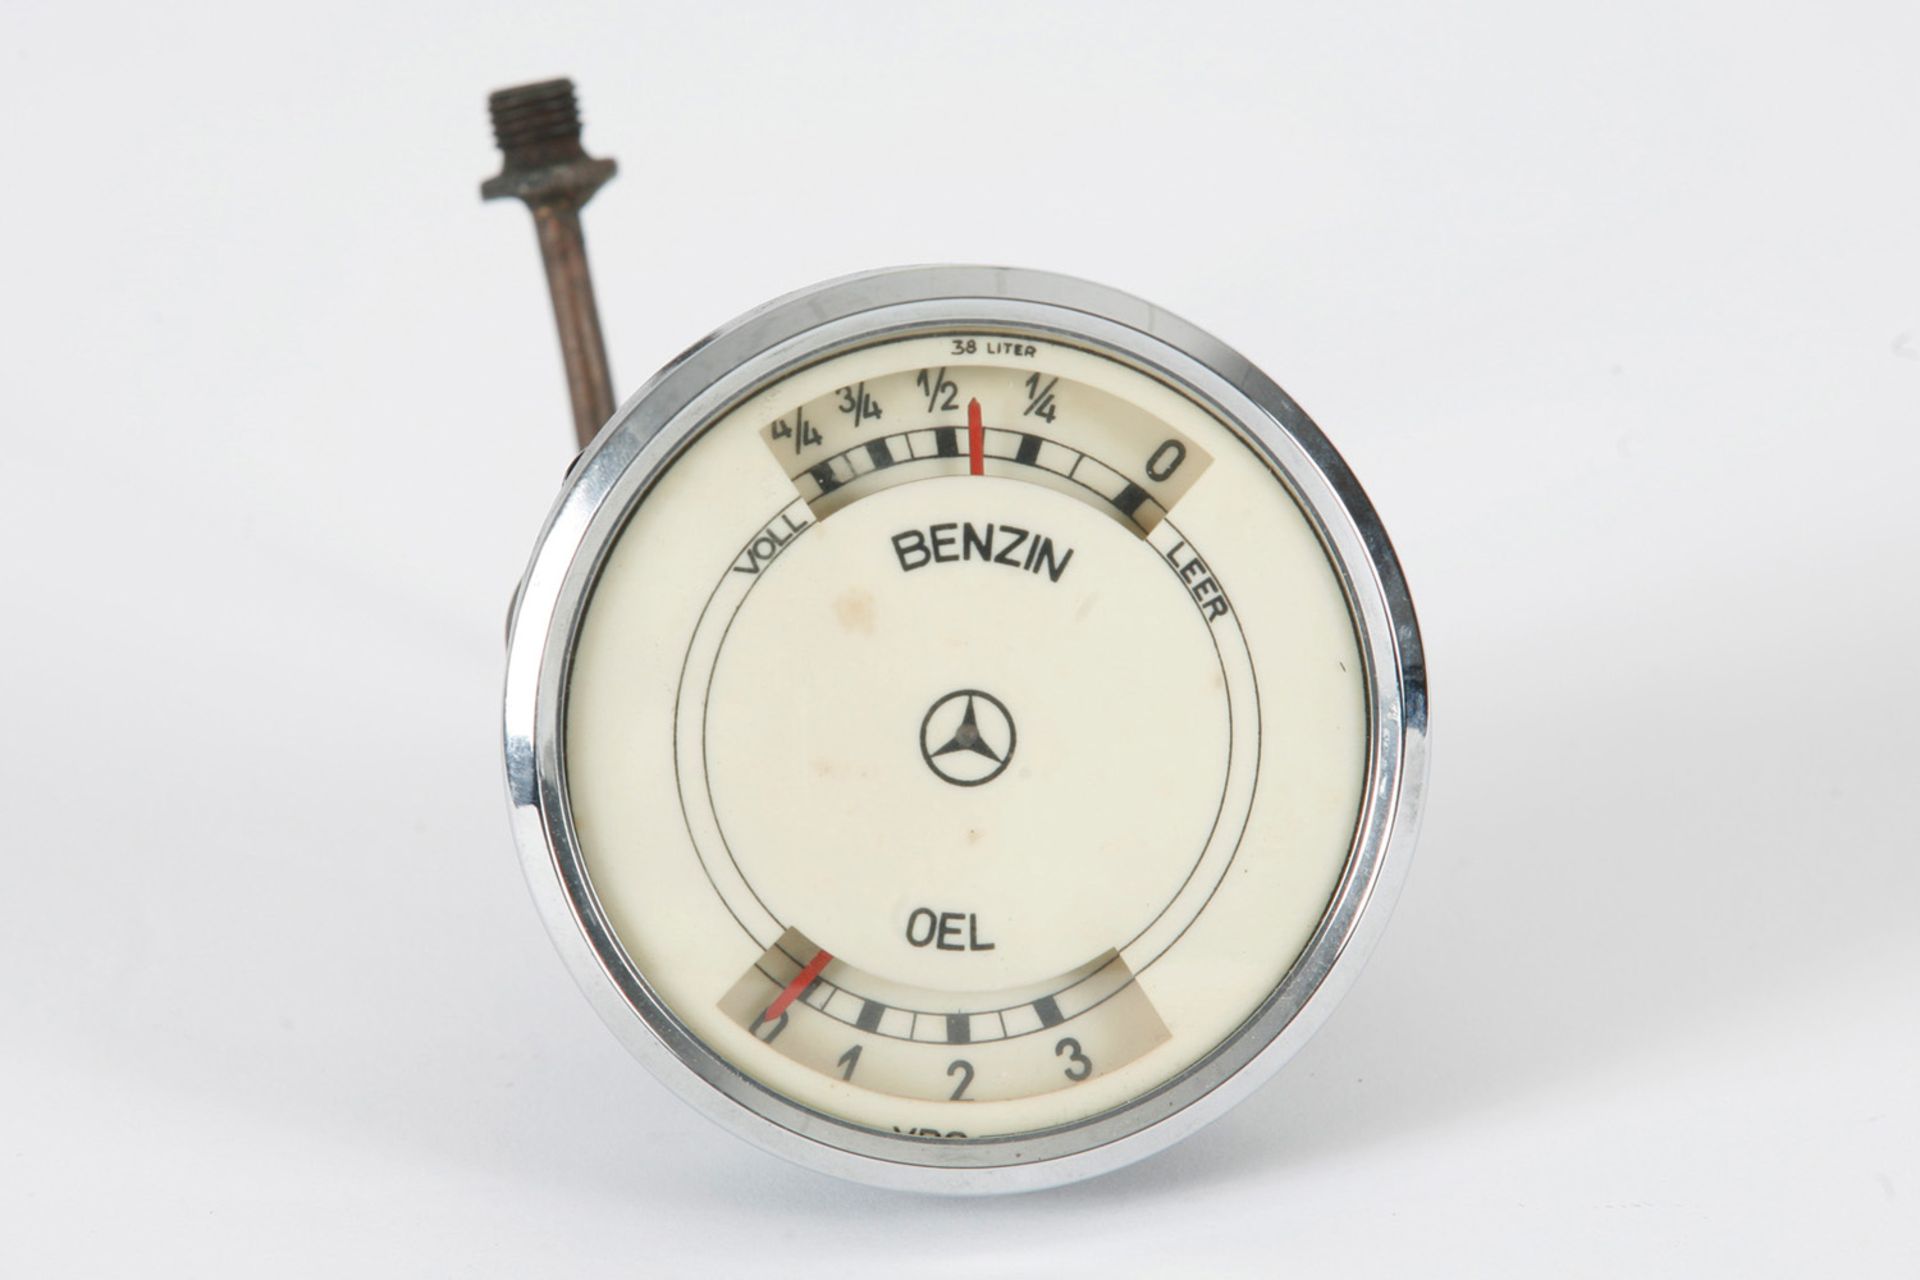 VDO Kombiinstrument Oel/Benzin, für Mercedes Kompressor,  320, 290, 230, Durchmesser 9,7 cm, guter